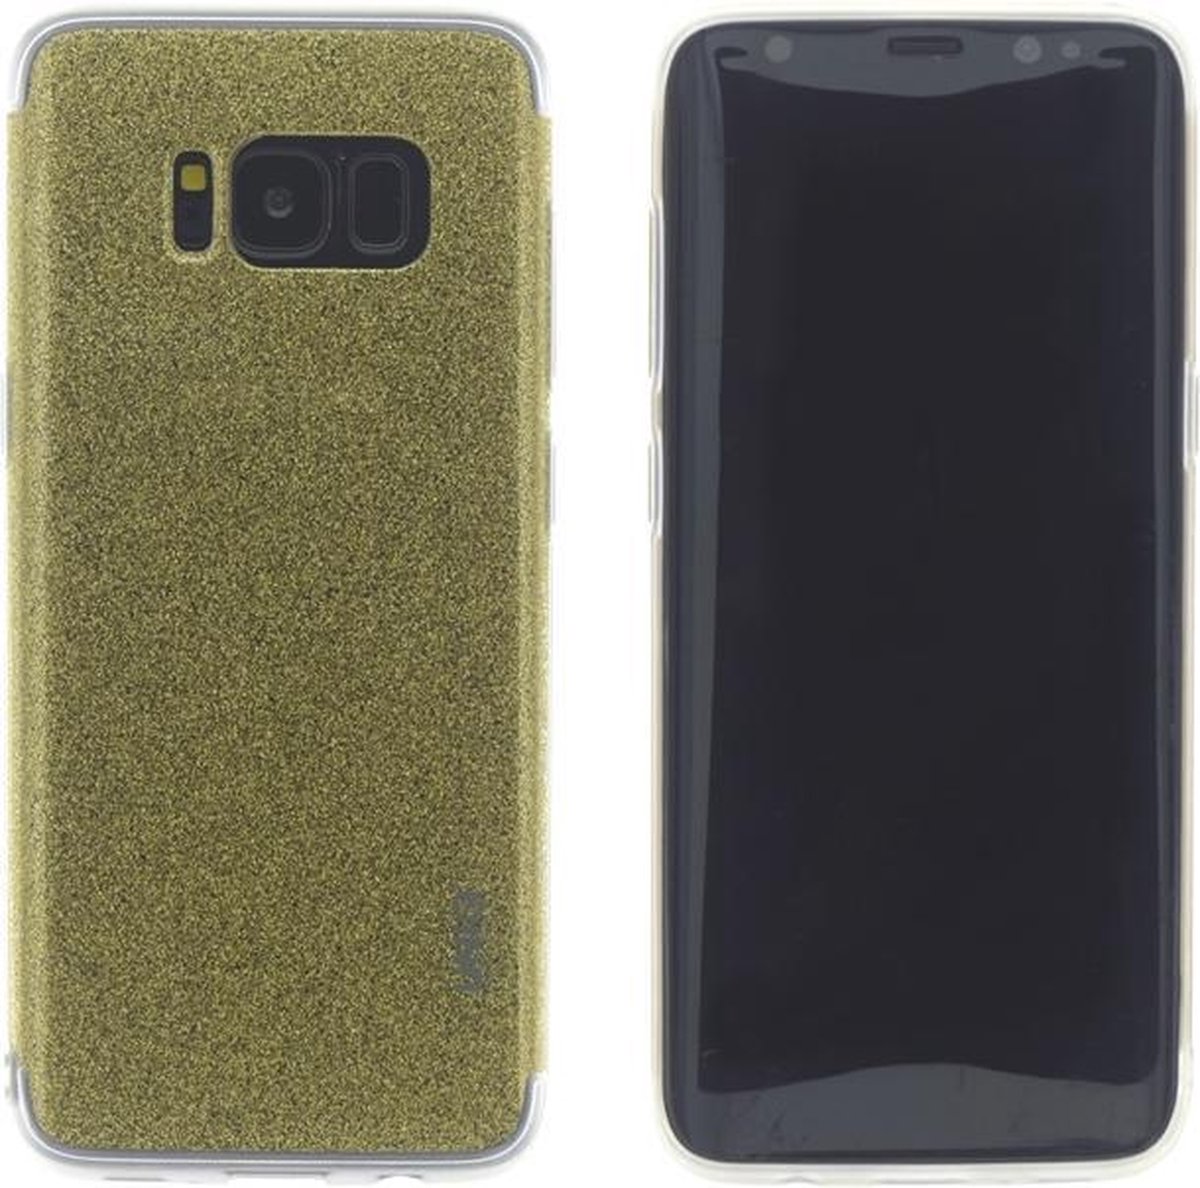 UNIQ Accessory Galaxy S8 Back Cover hoesje glitter - Goud (G950F)